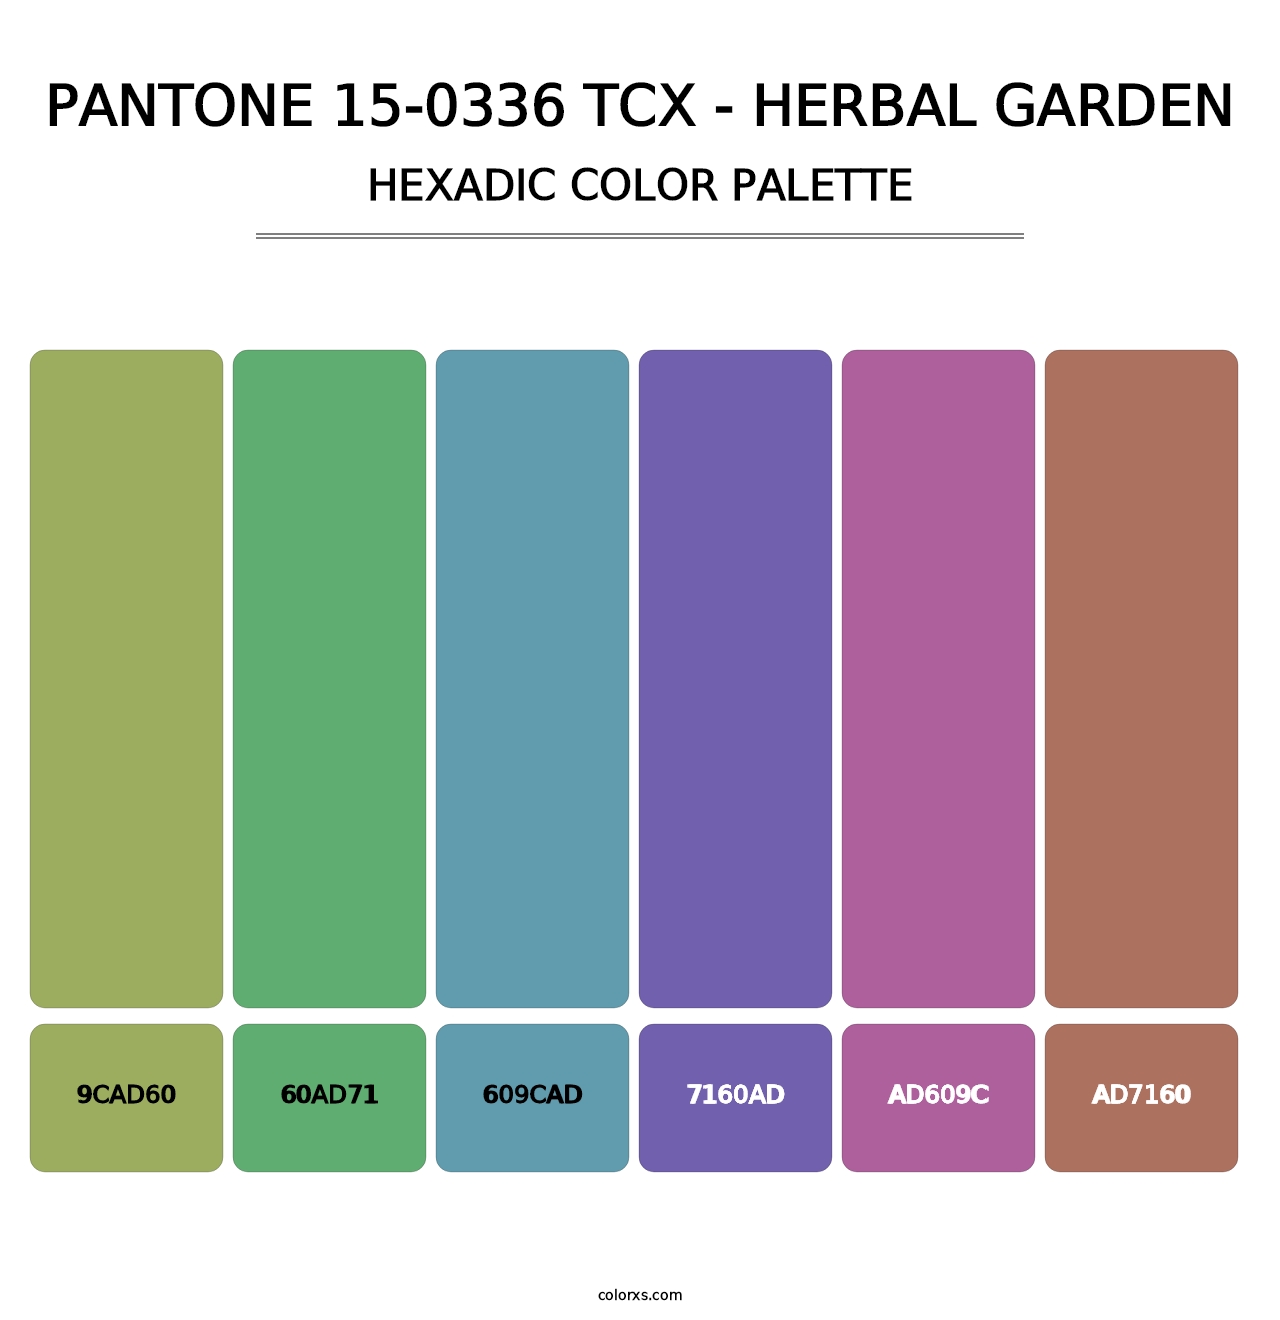 PANTONE 15-0336 TCX - Herbal Garden - Hexadic Color Palette